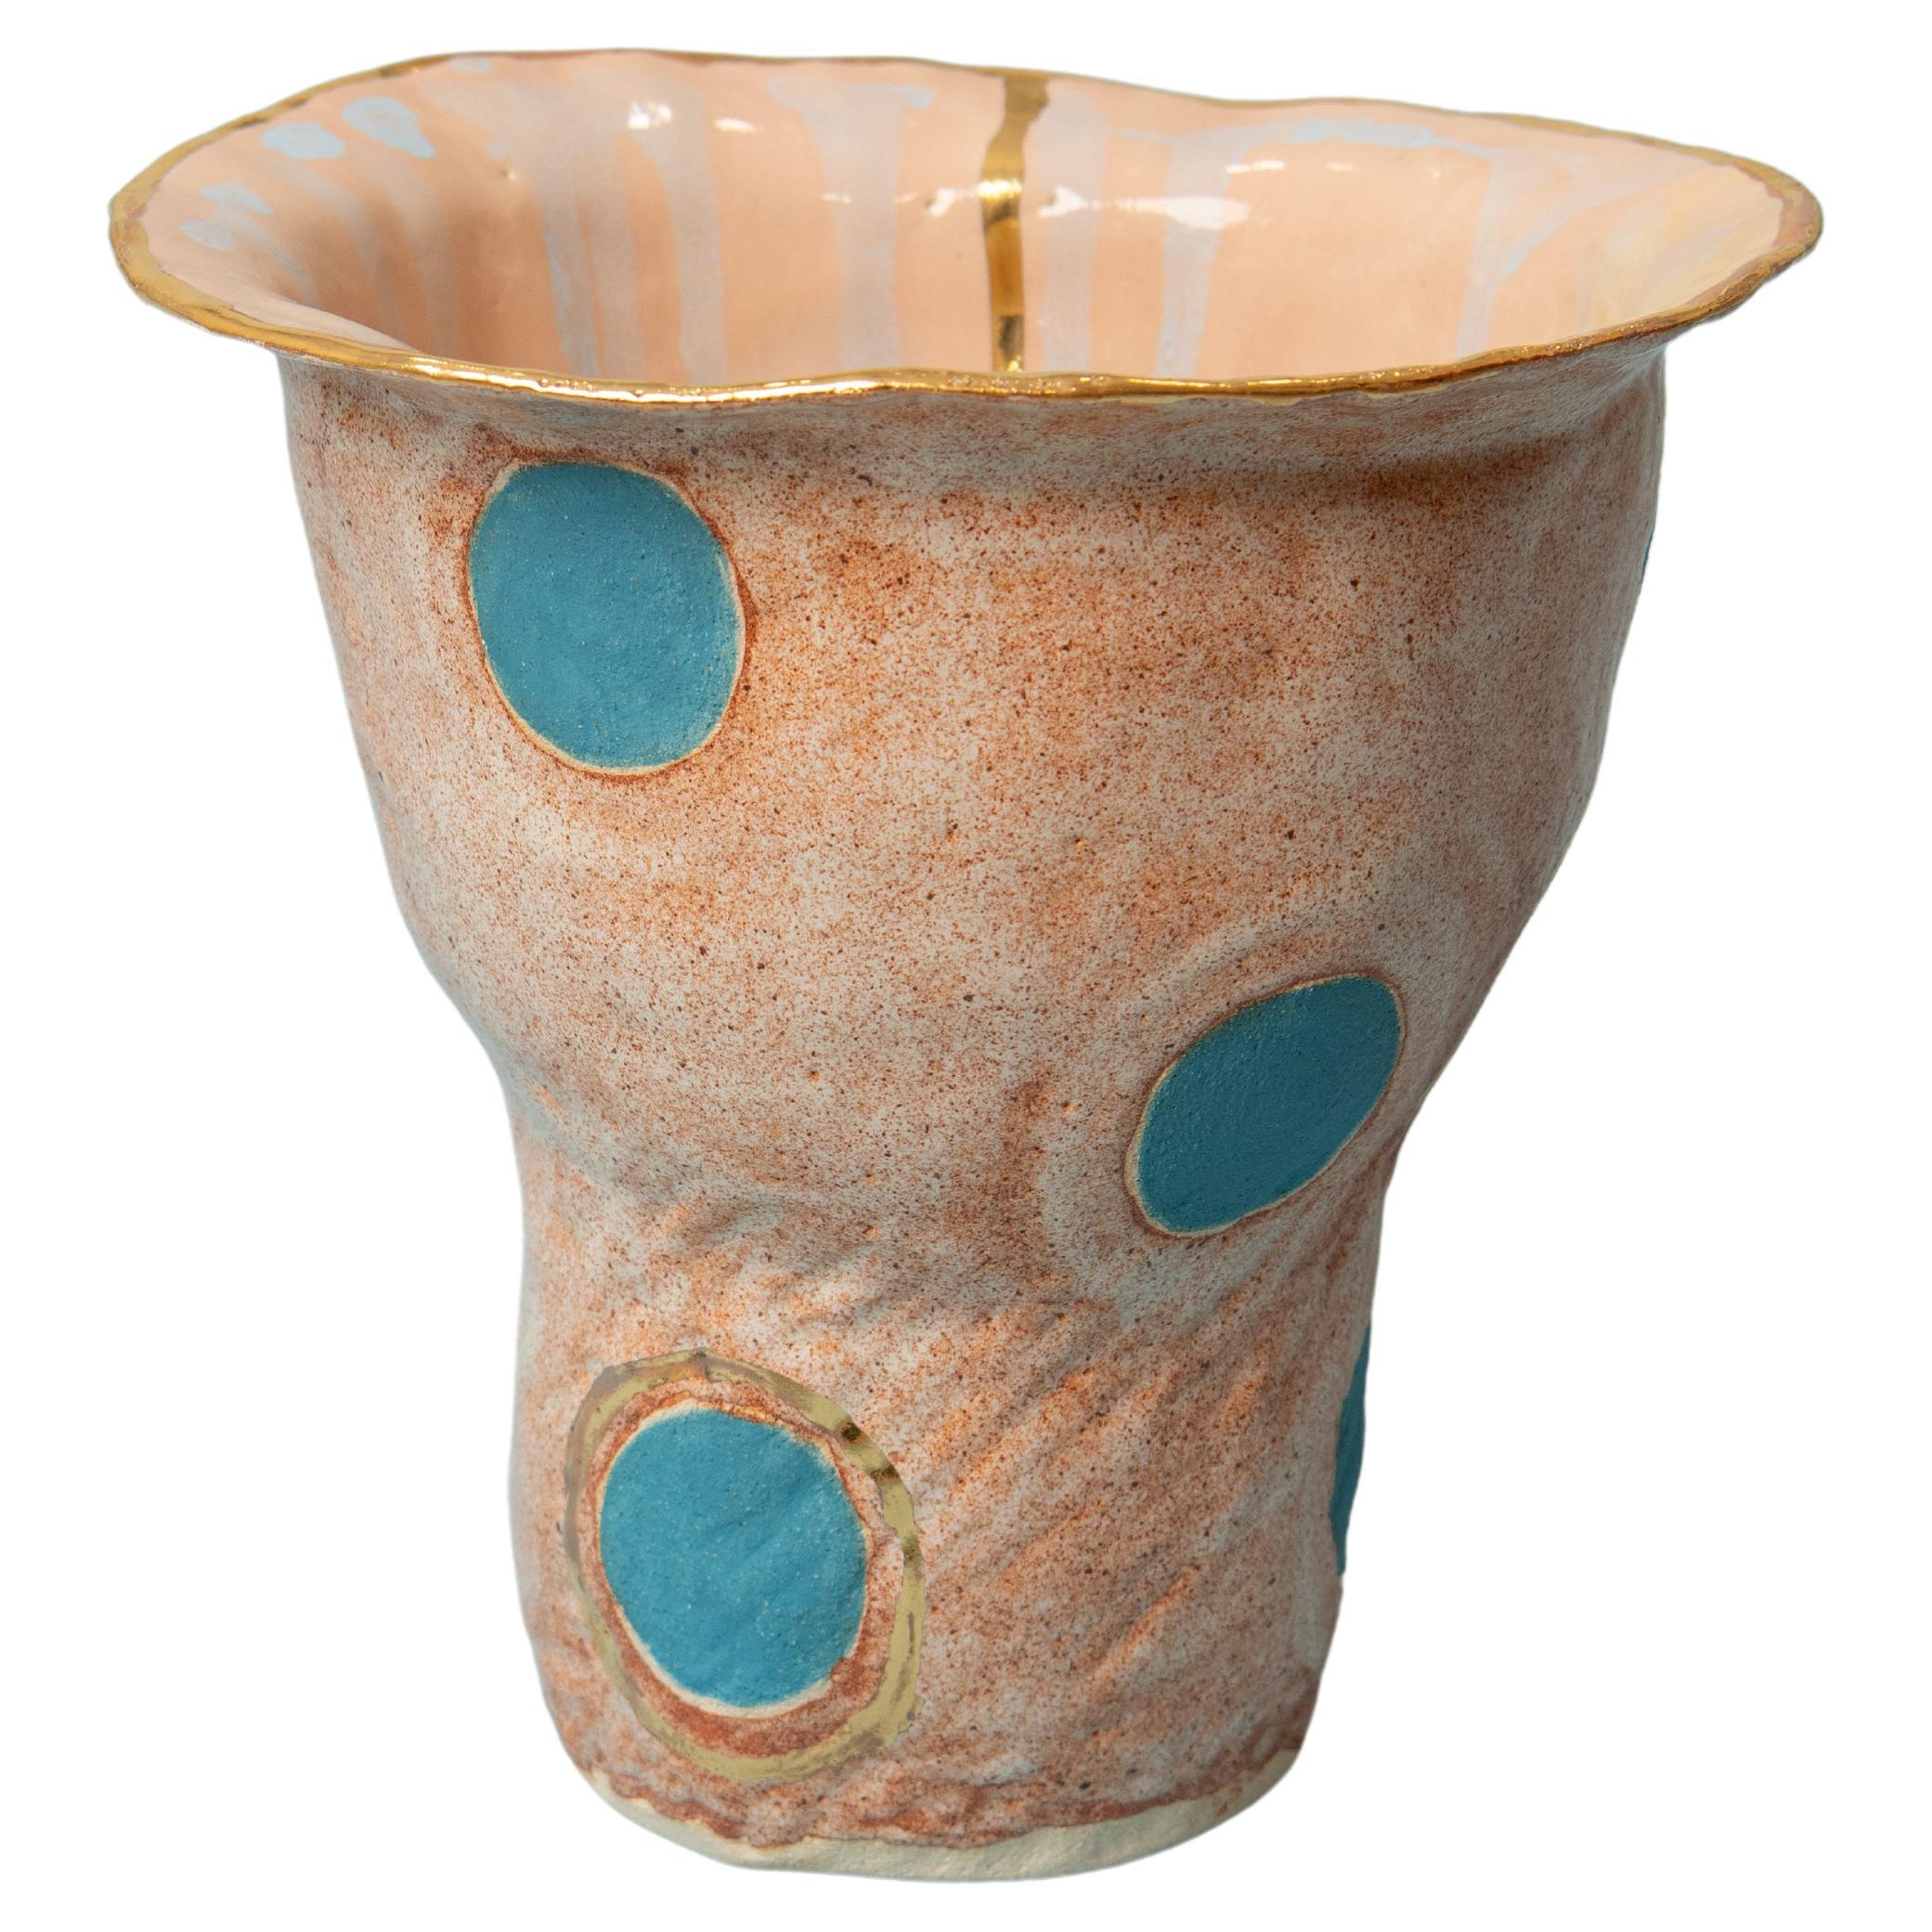 OLÉ Vase Nr. 2 von der Künstlerin und Designerin Hania Jneid